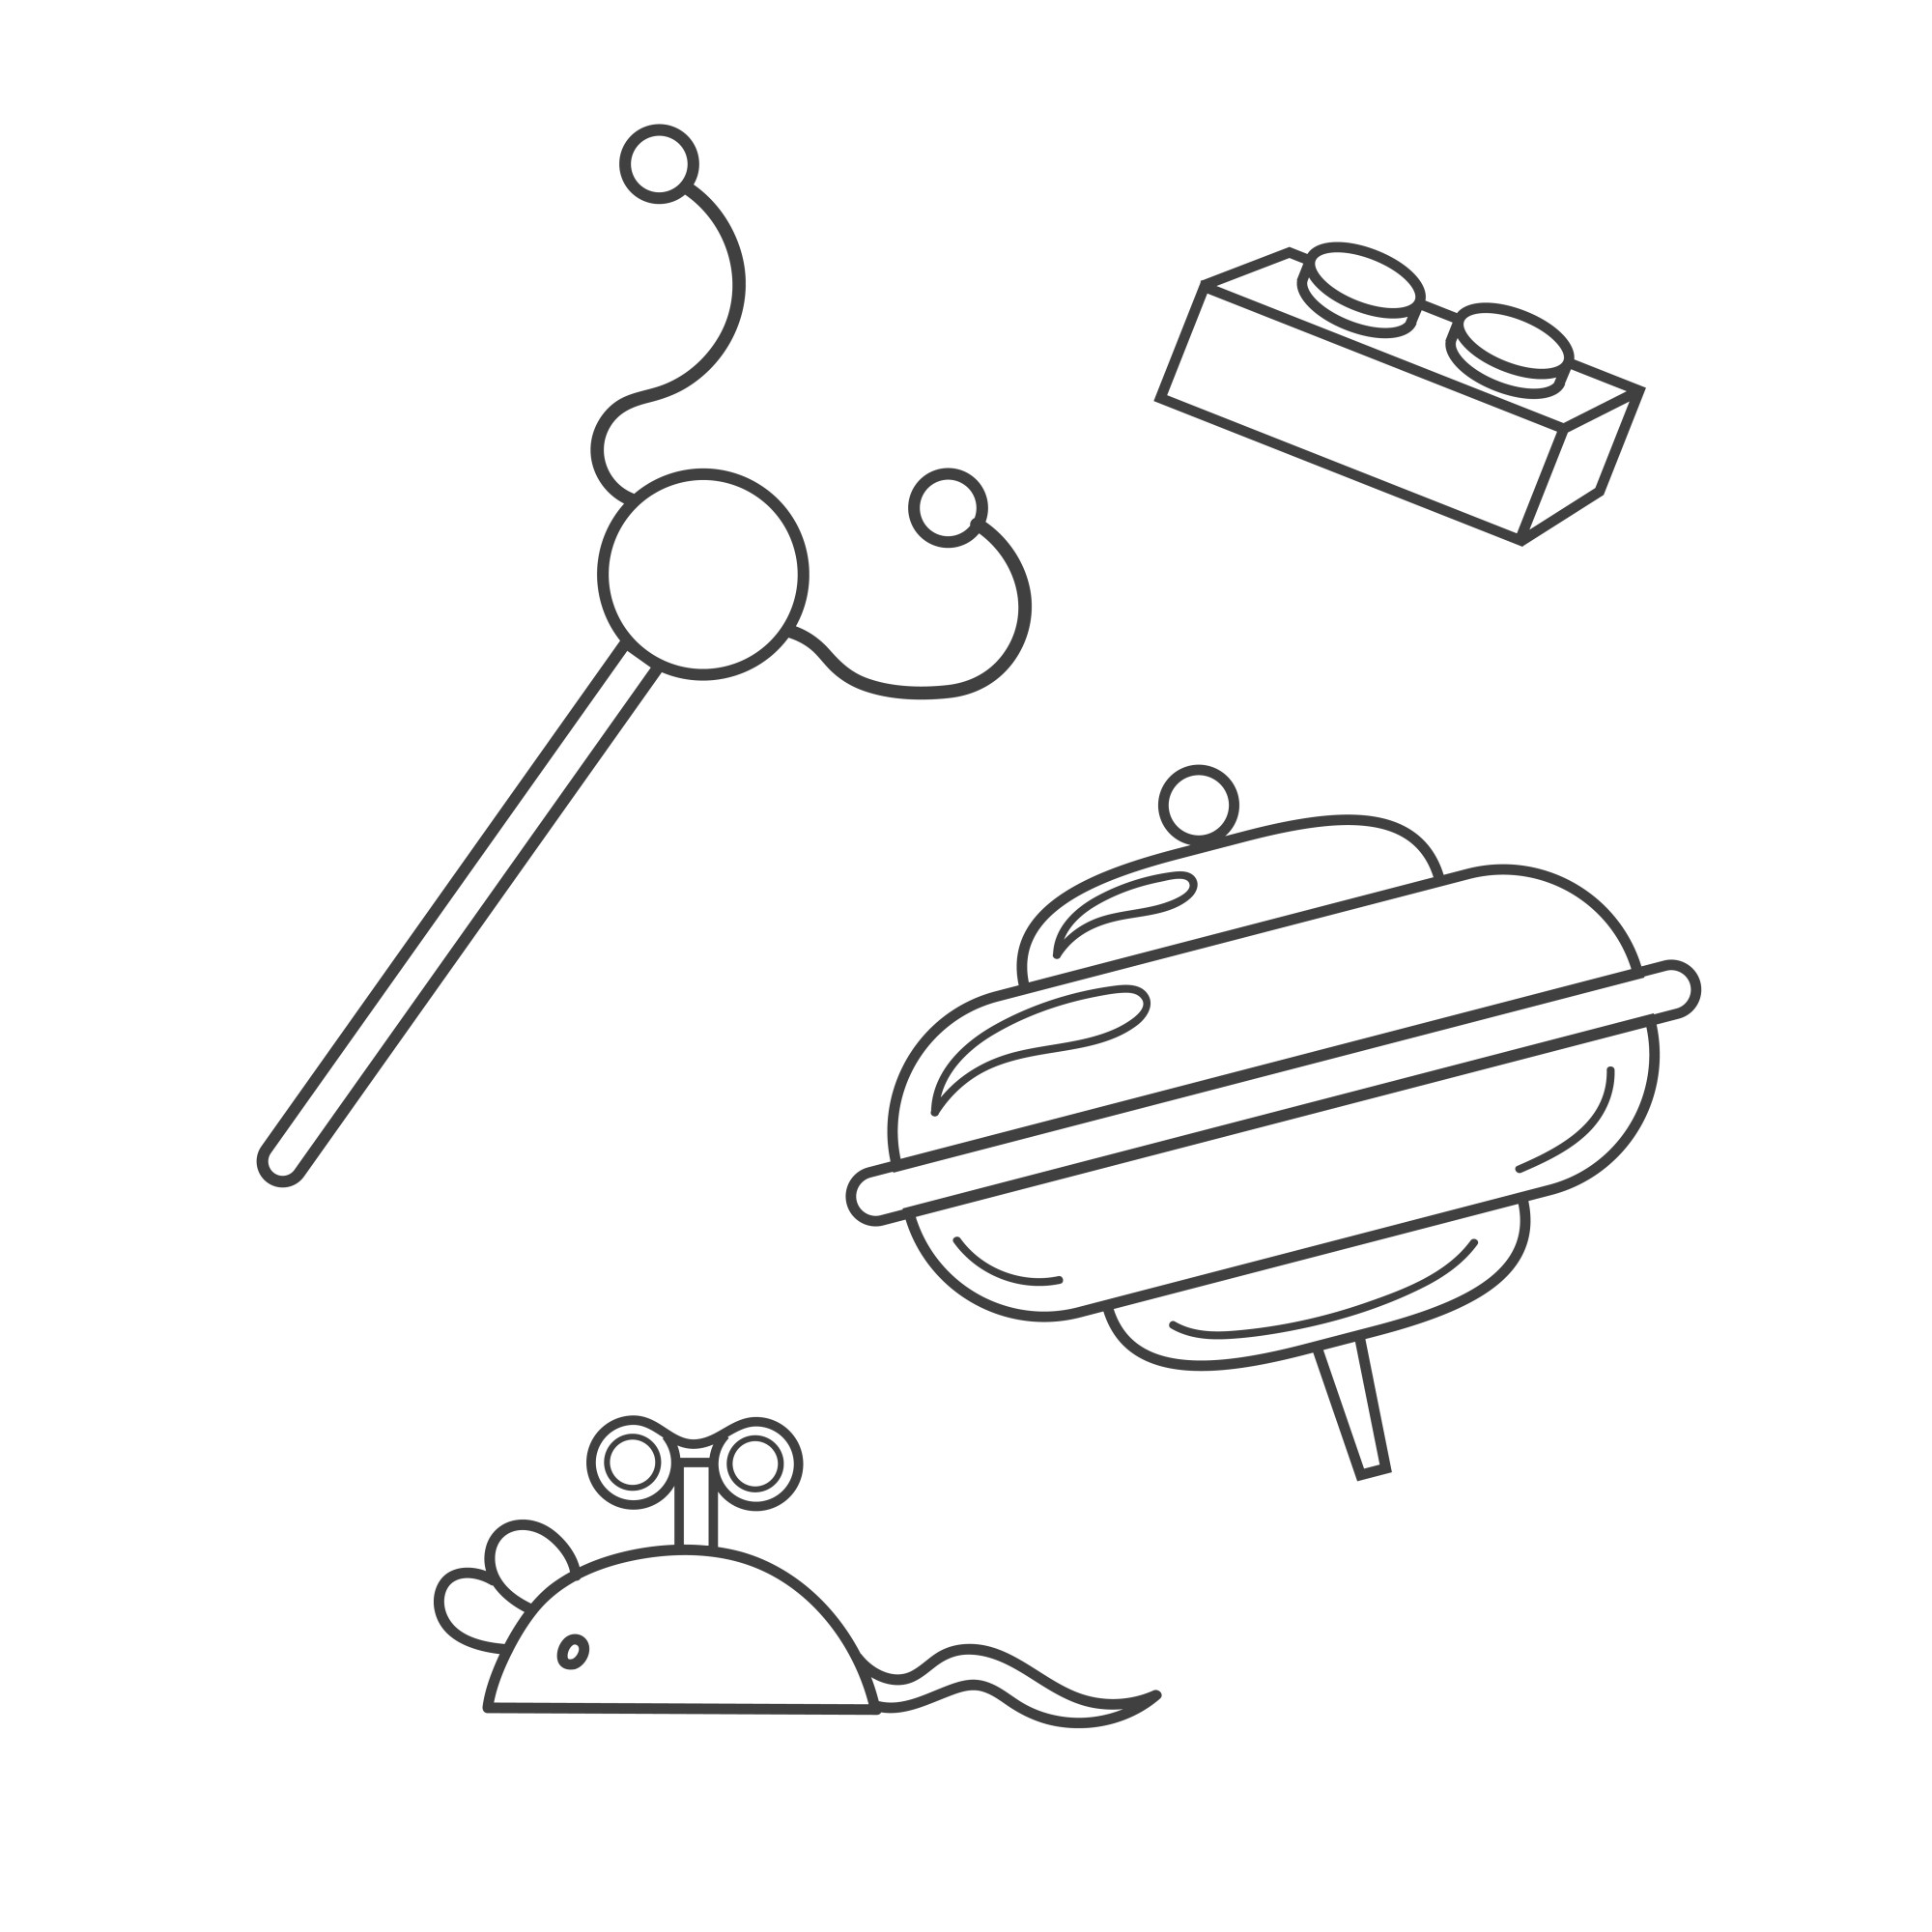 Раскраска для детей: игрушки для малышей: юла, деталь конструктора лего, заводная мышка